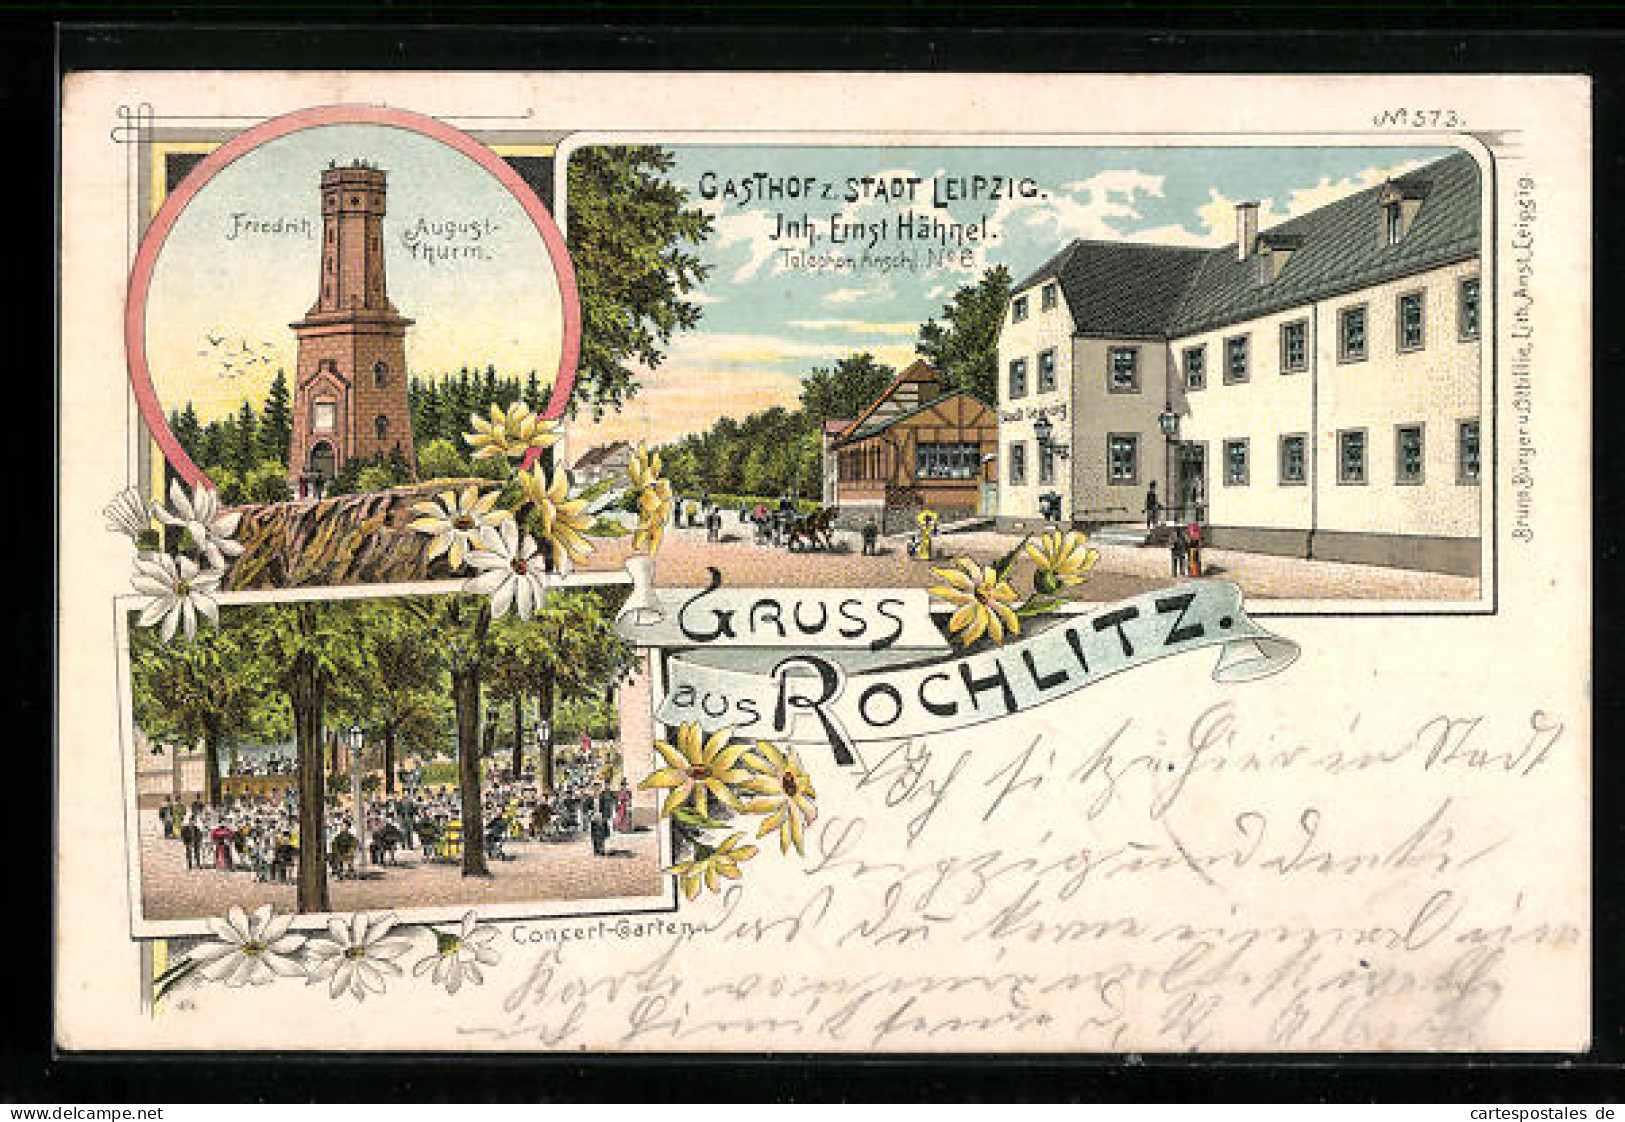 Lithographie Rochlitz, Gasthof Z. Stadt Leipzig, August-Turm, Concert-Garten  - Rochlitz